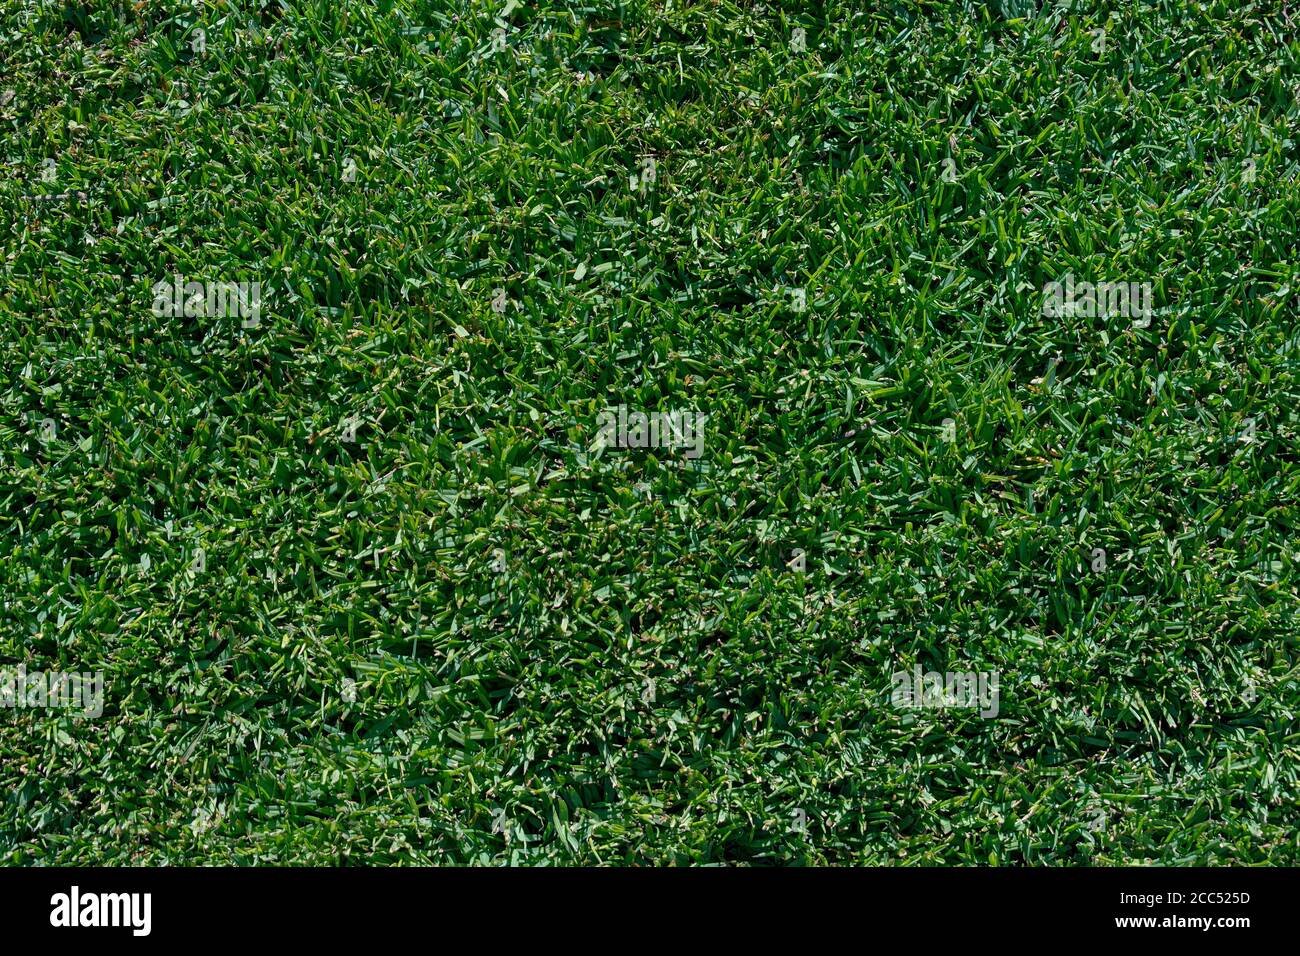 Nahaufnahme eines Teils eines grünen Rasens Von Zwerg st augustine Gras zeigt das dichte Muster und Textur eines gesunden Rasens Stockfoto